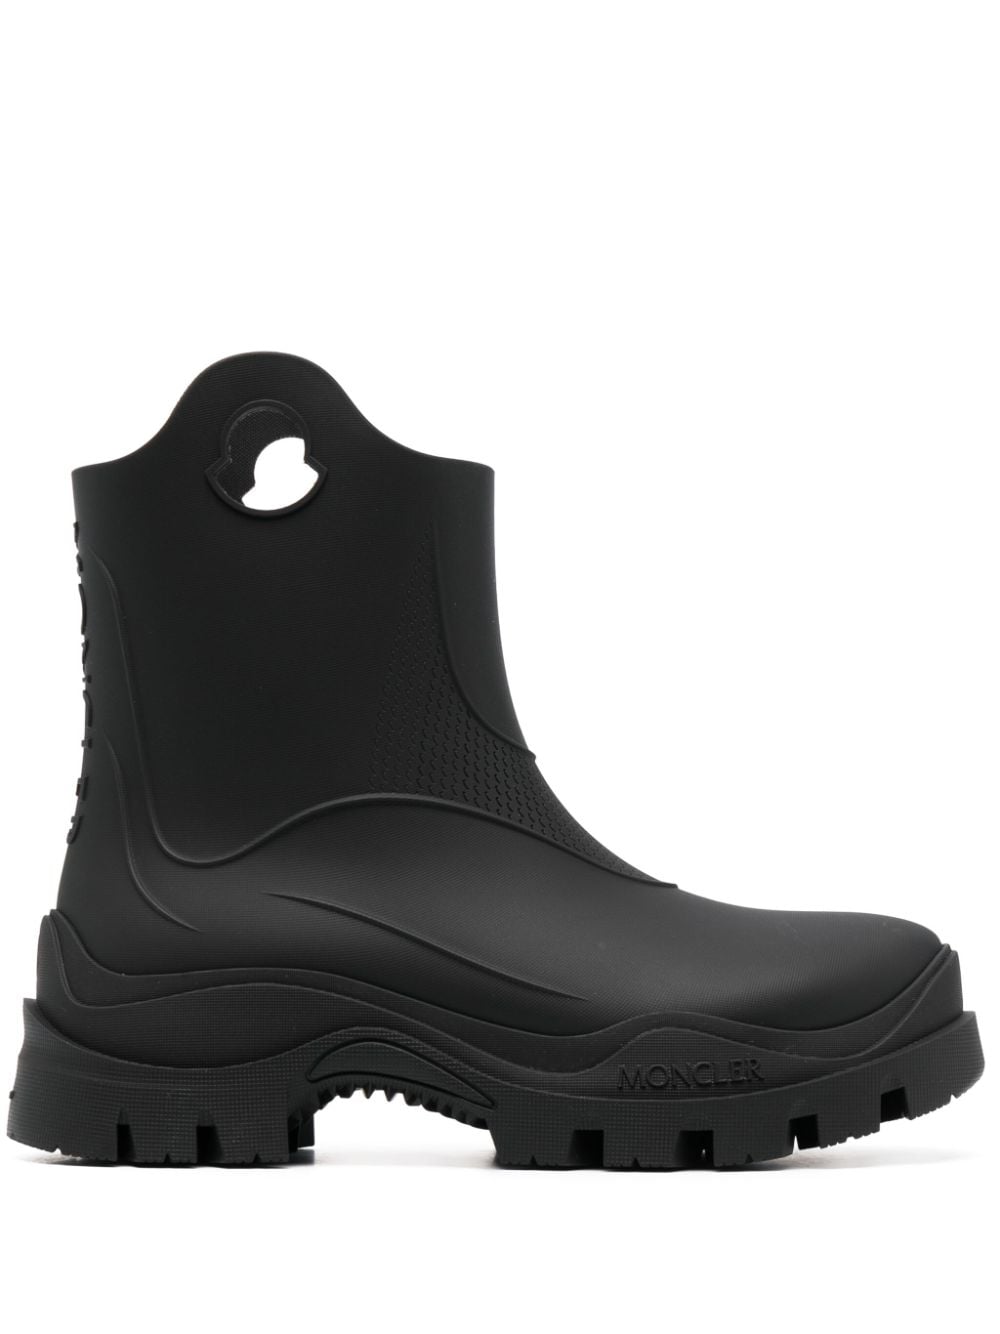 Moncler Misty textured rain boots - Black von Moncler